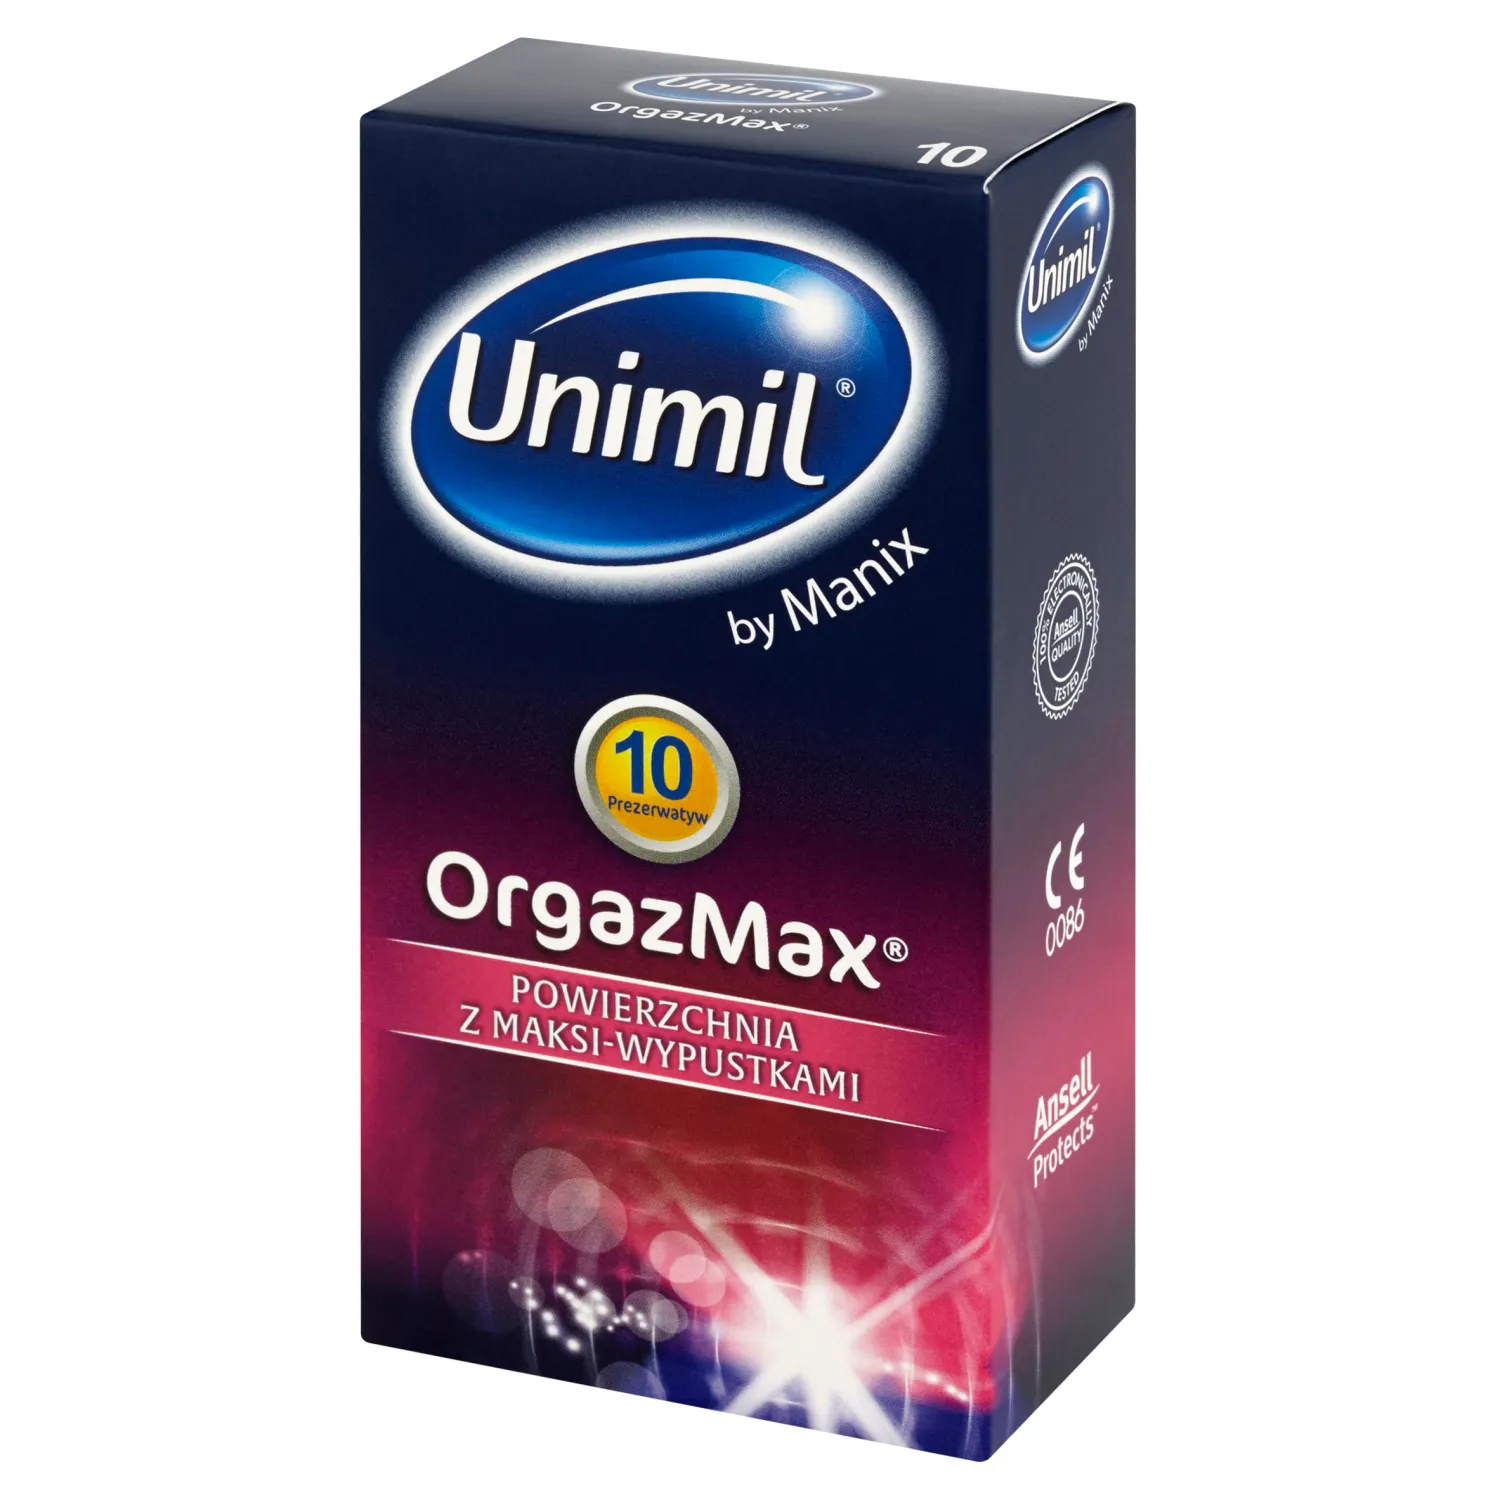 Unimil OrgazMax, prezerwatywy, 10 sztuk